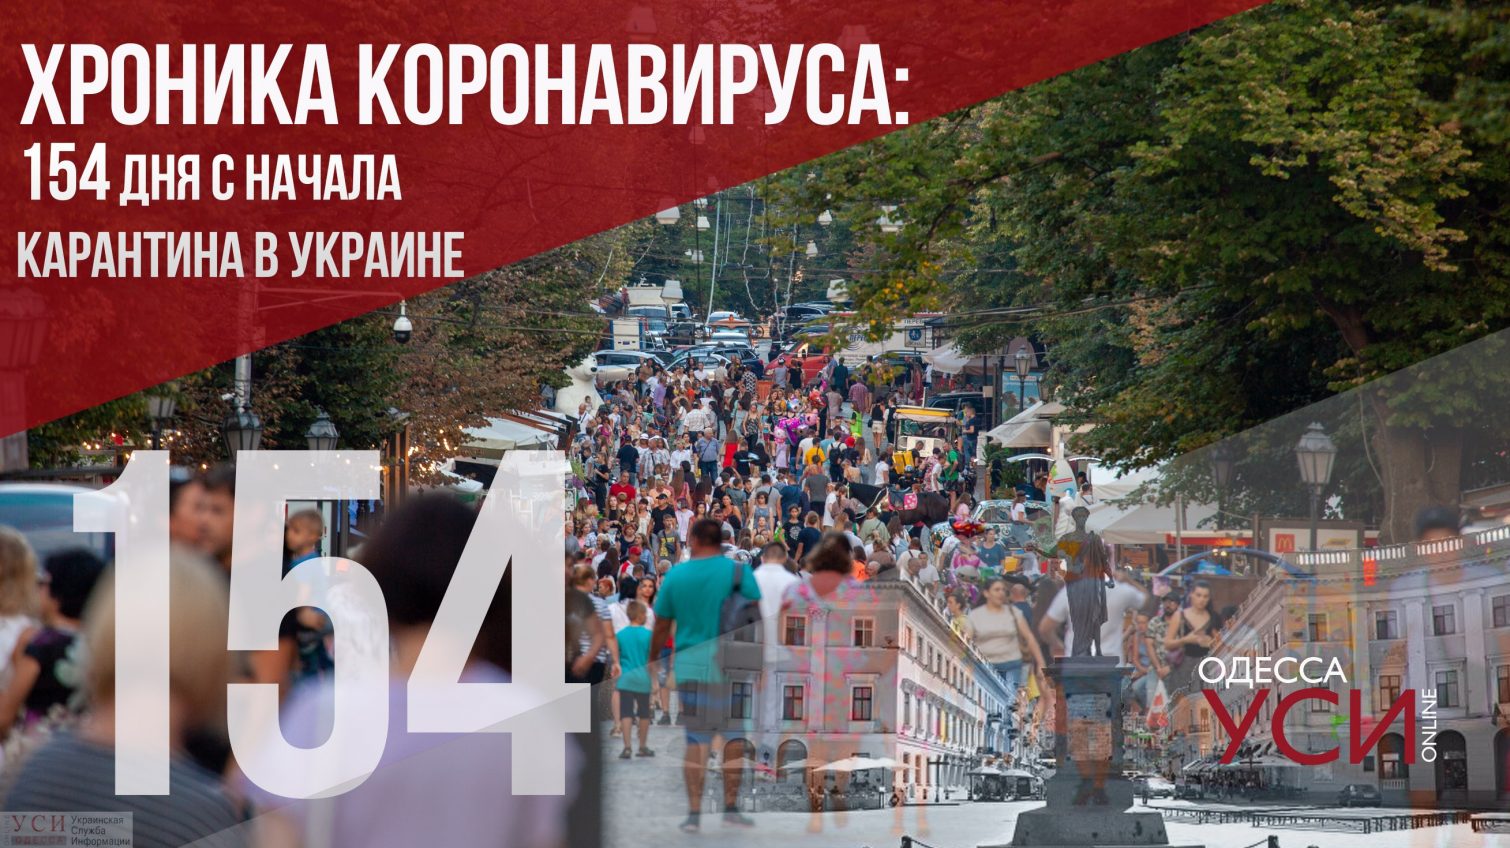 Хроника коронавируса: 154 день с начала карантина в Украине, новый рост числа заболевших «фото»